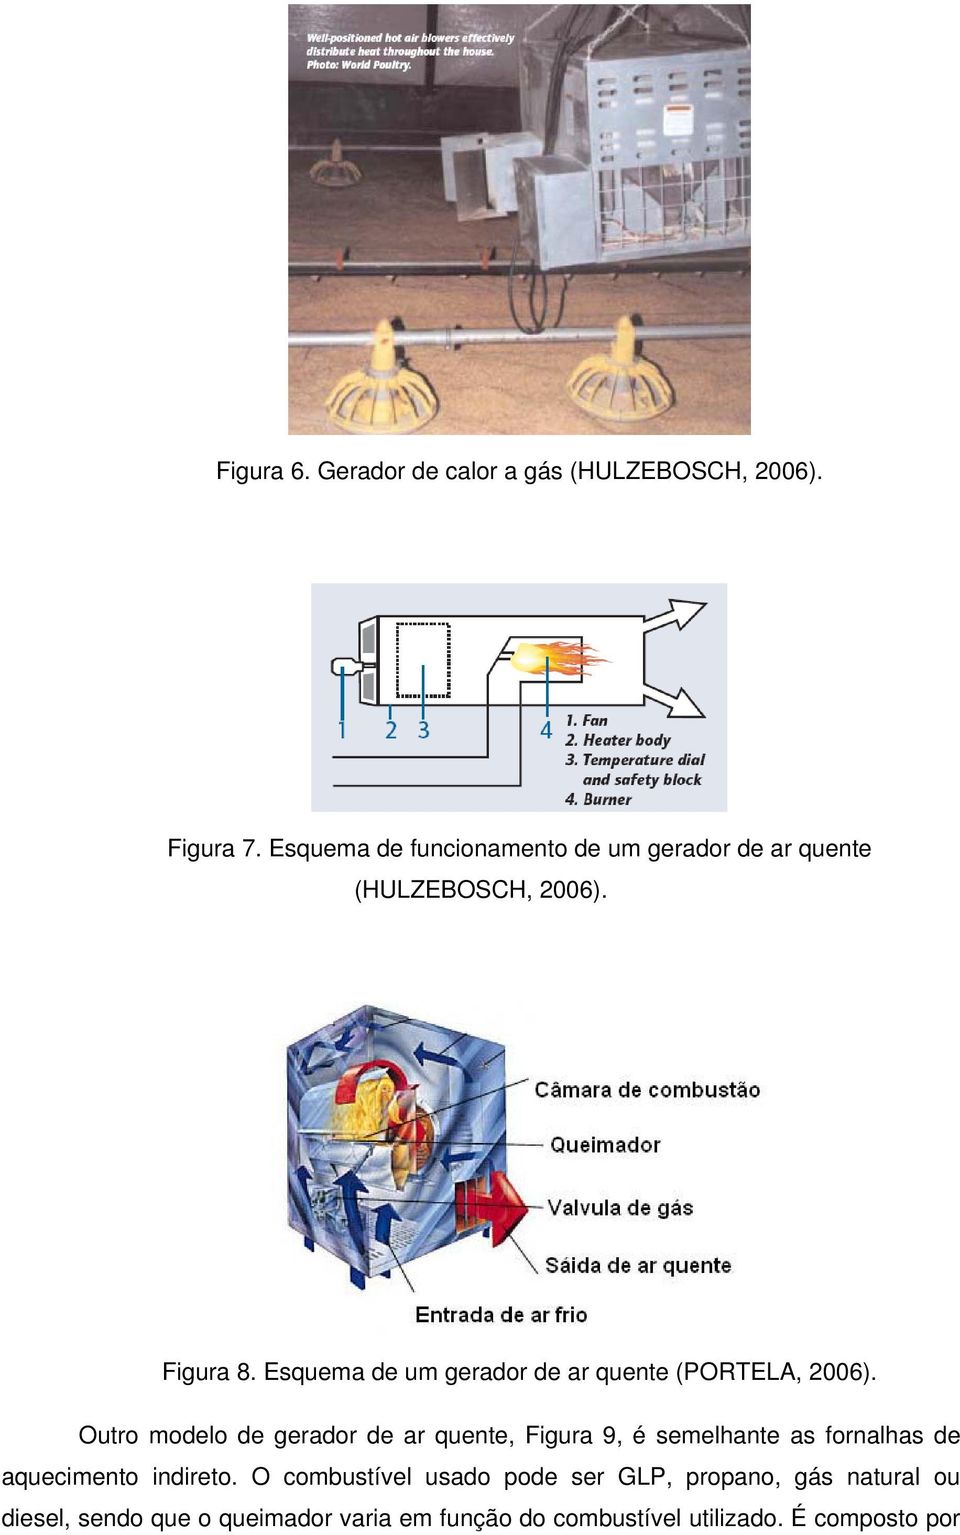 Esquema de um gerador de ar quente (PORTELA, 2006).